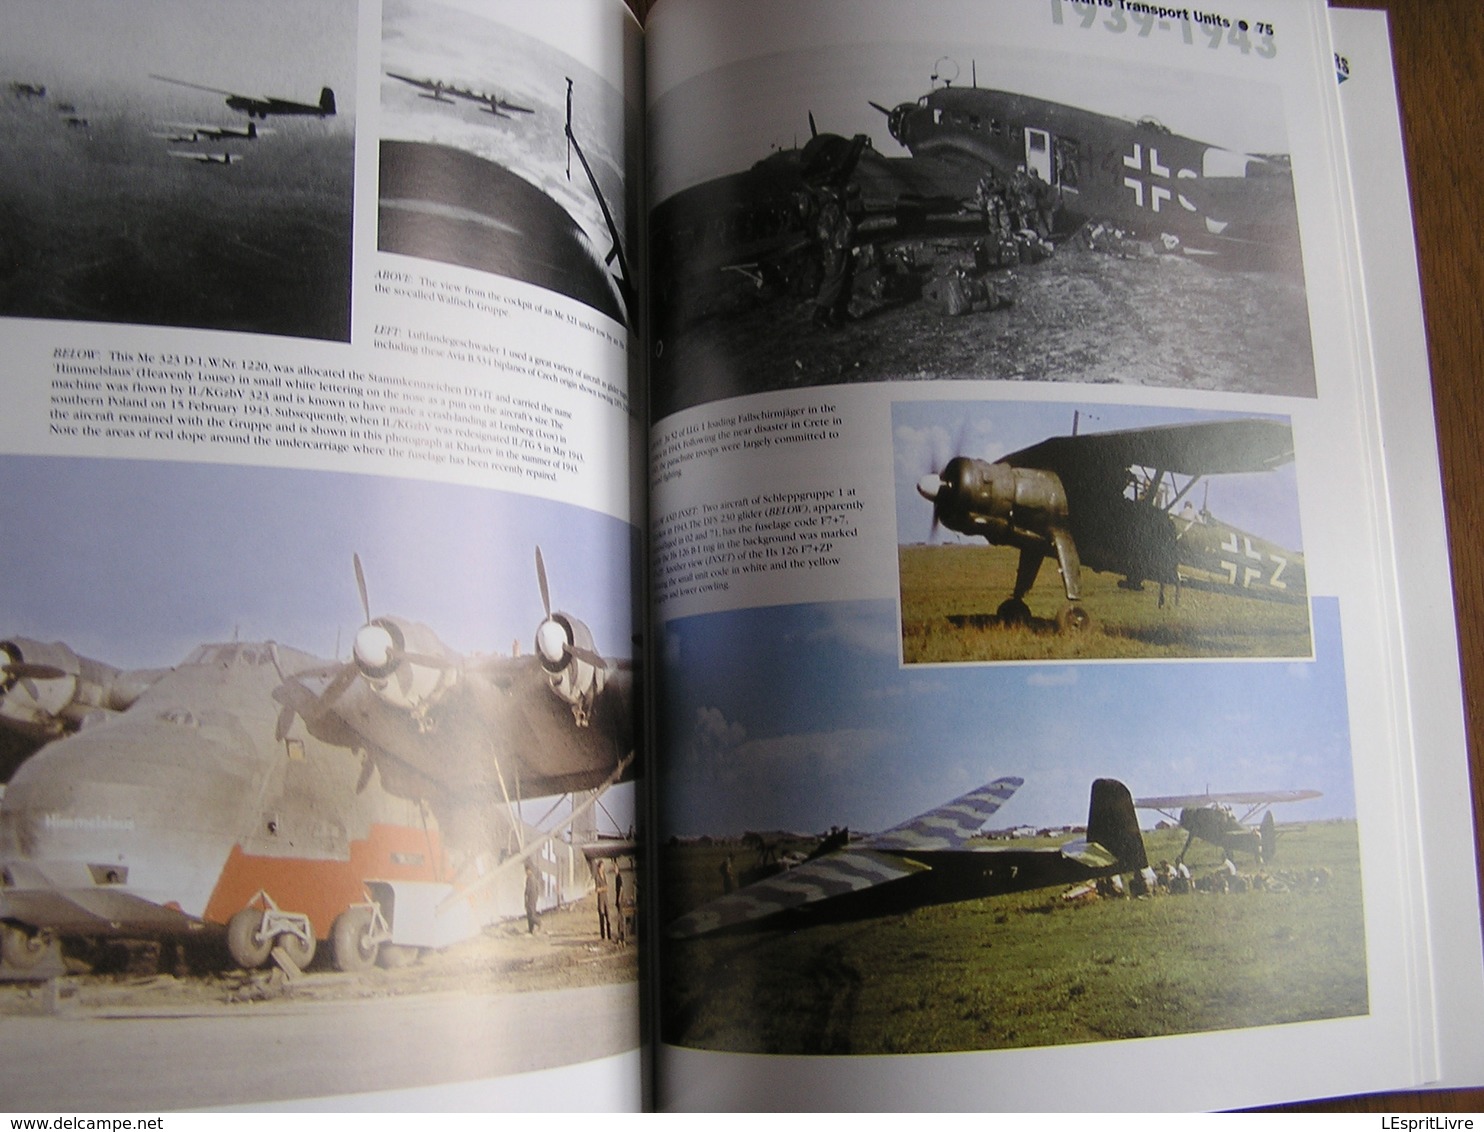 LUFTWAFFE TRANSPORT UNITS 1939 1943 Vol 1 Aircraft Transporter Marking Guerre 40 45 Aviation Allemande Avion JU 52 ME321